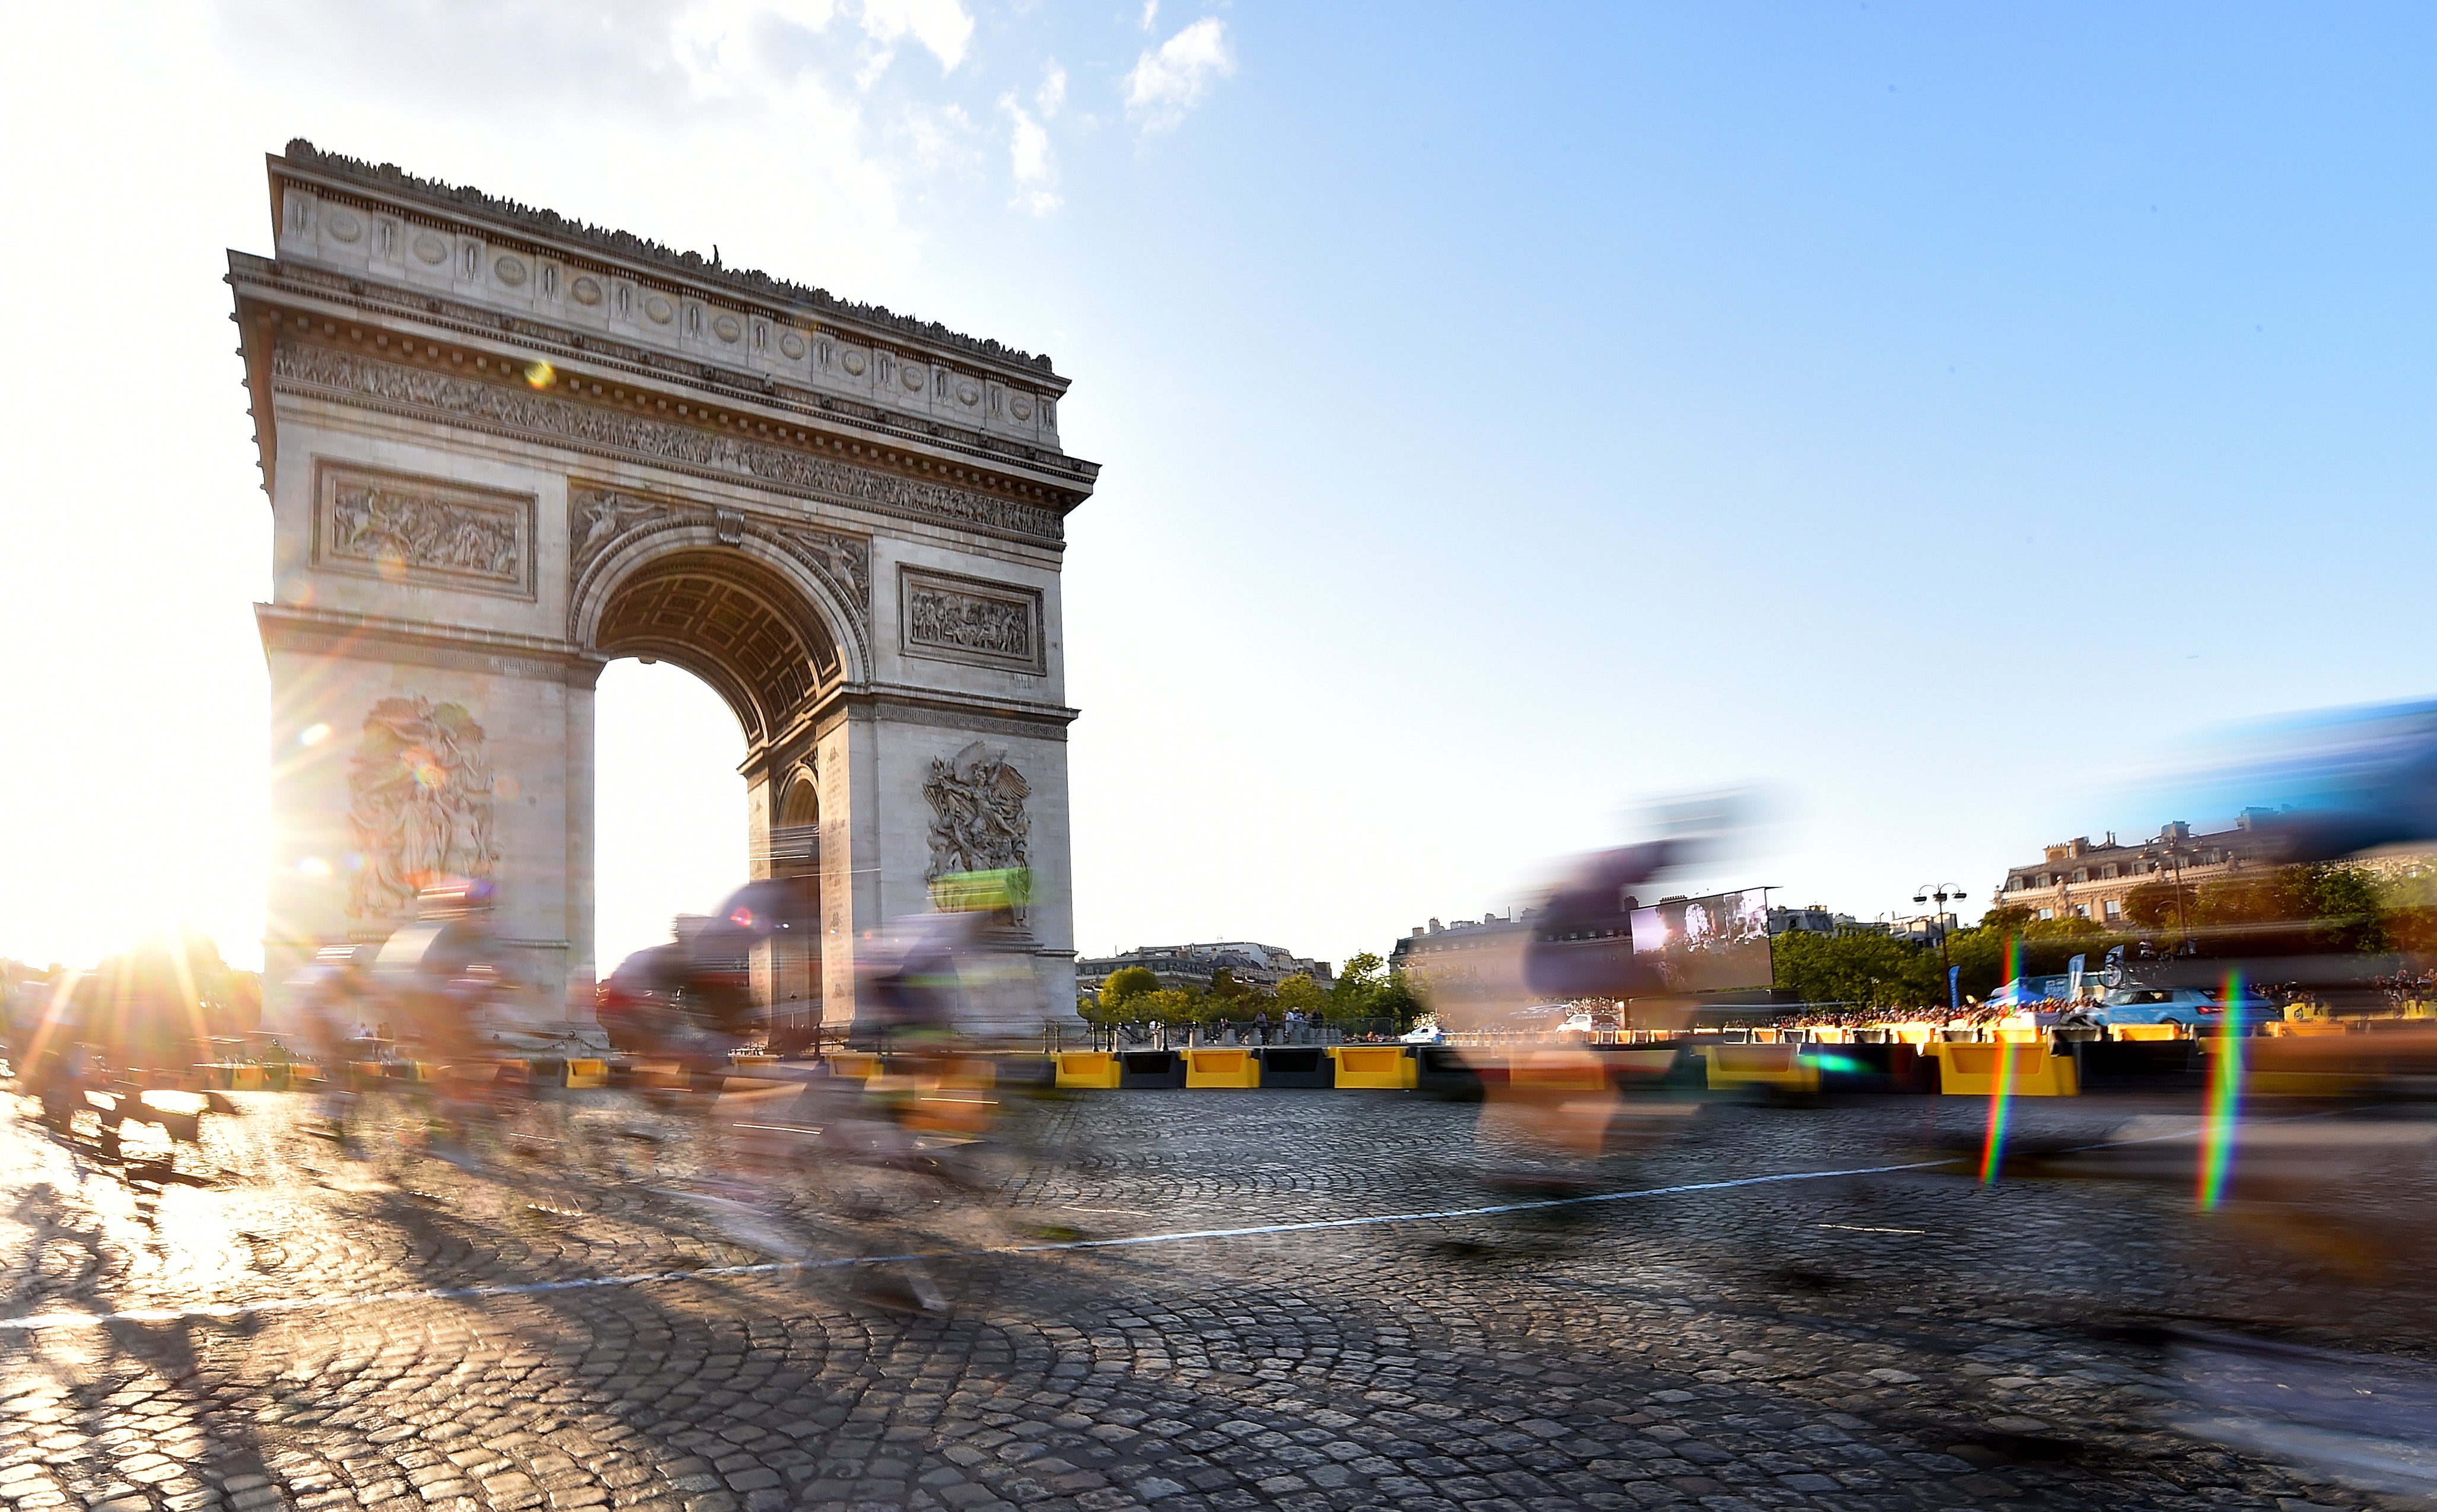 Tour de France 2019 – Stage 21 – Rambouillet to Paris Champs Elysees